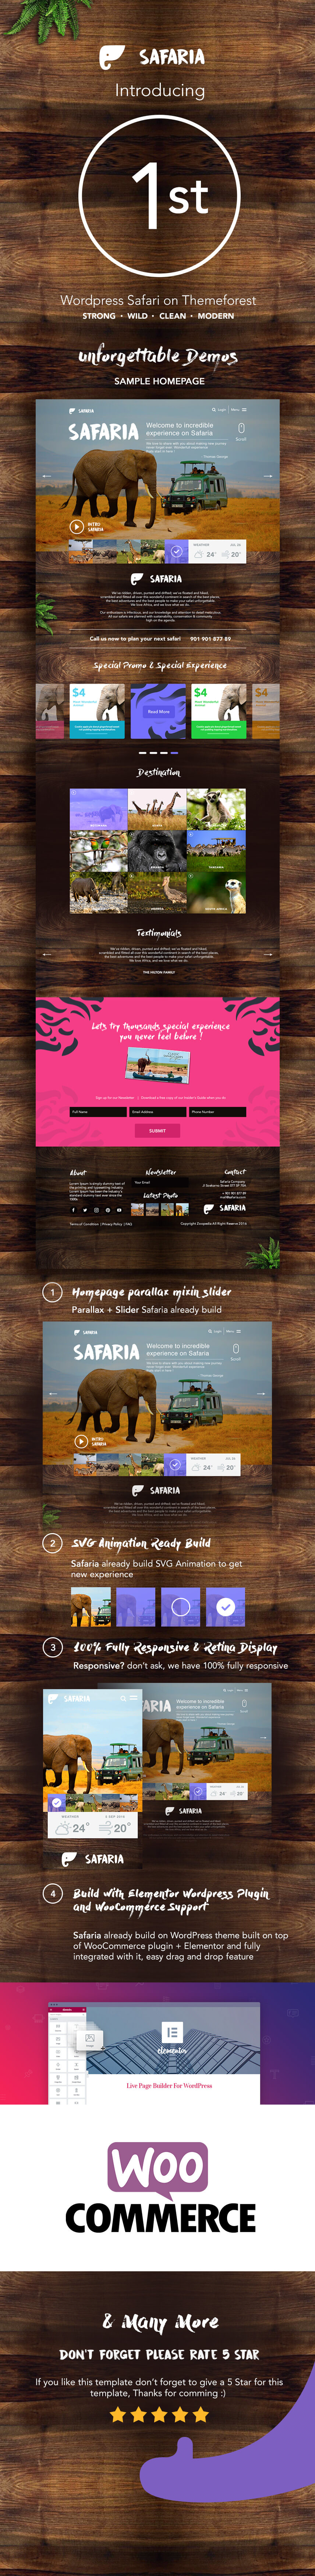 Safaria - Safari & Zoo WordPress Themes